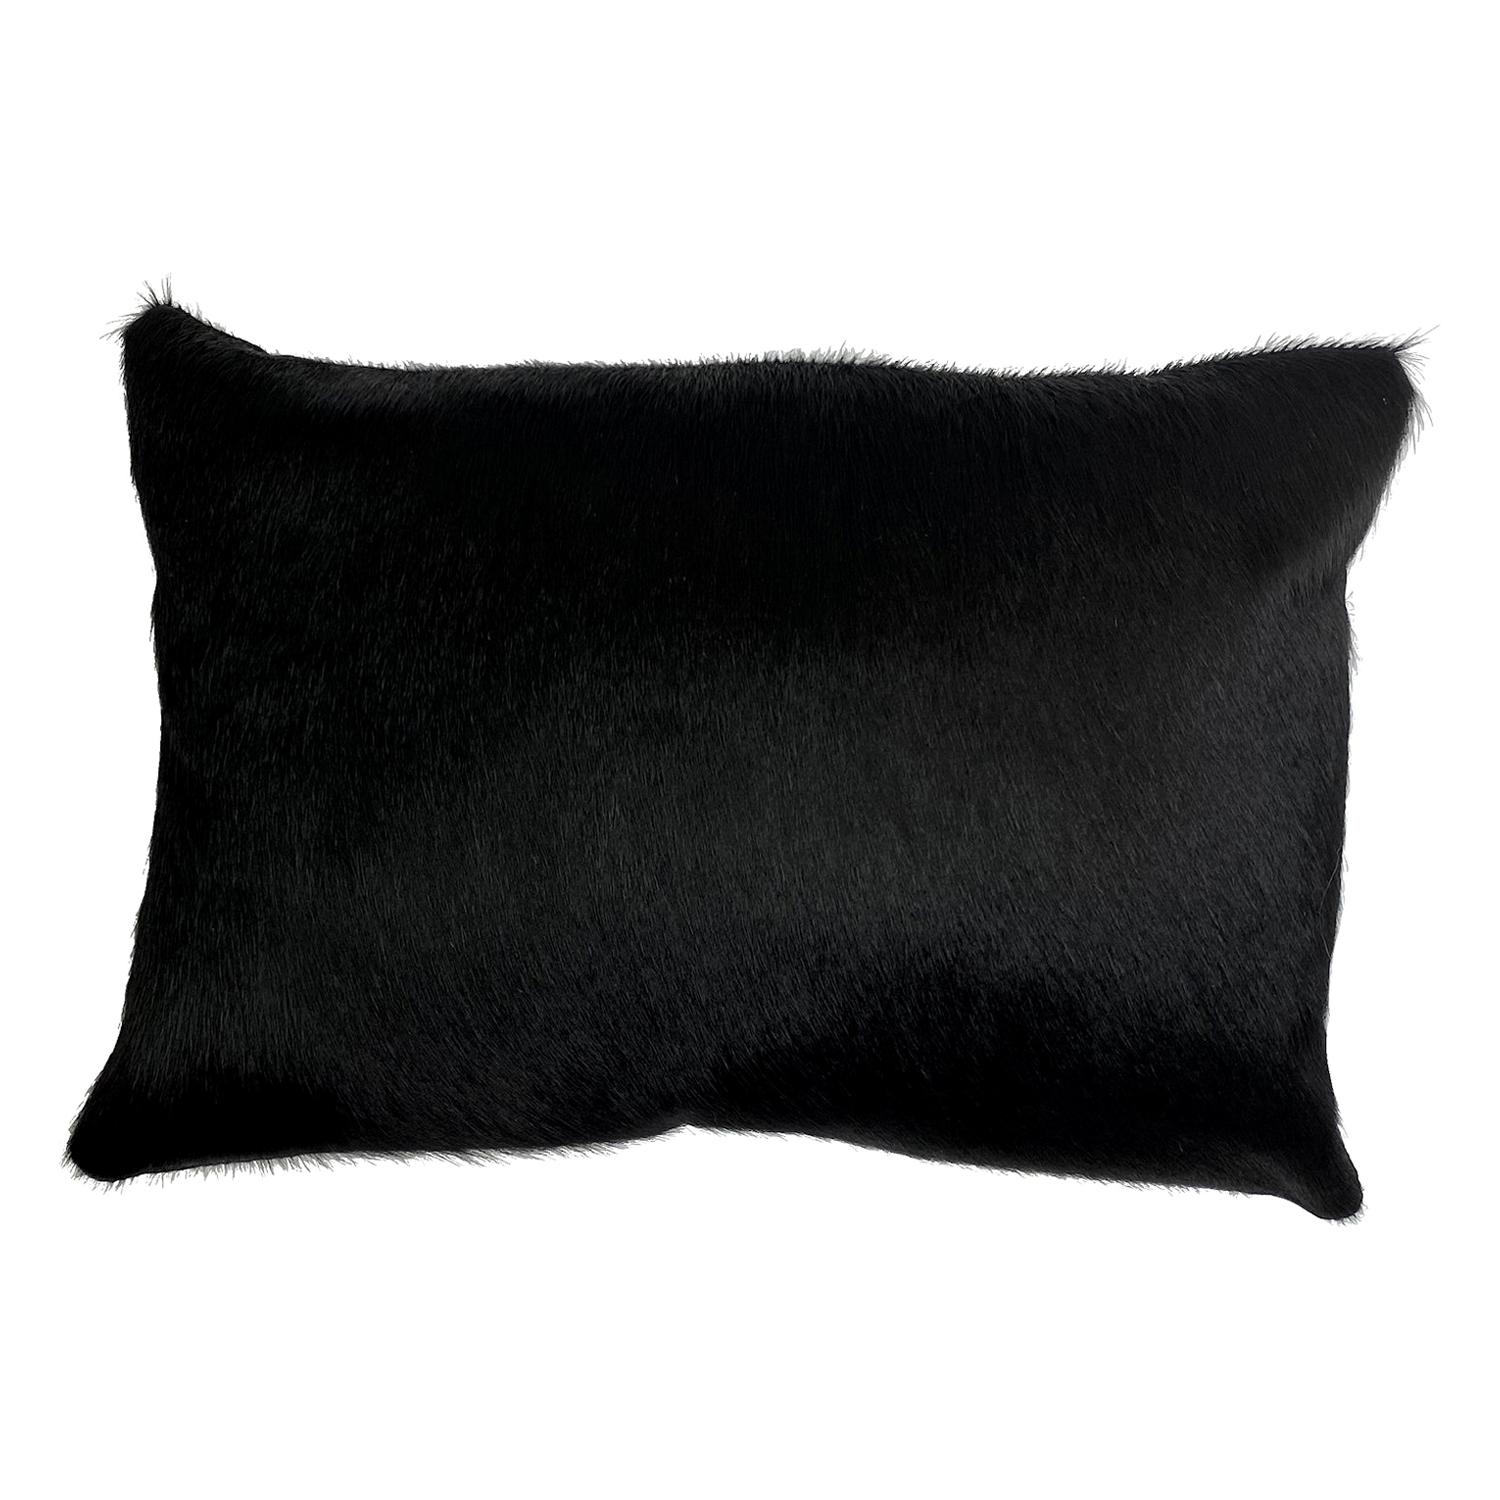 Black Cowhide Pillow, Lumbar Cushion